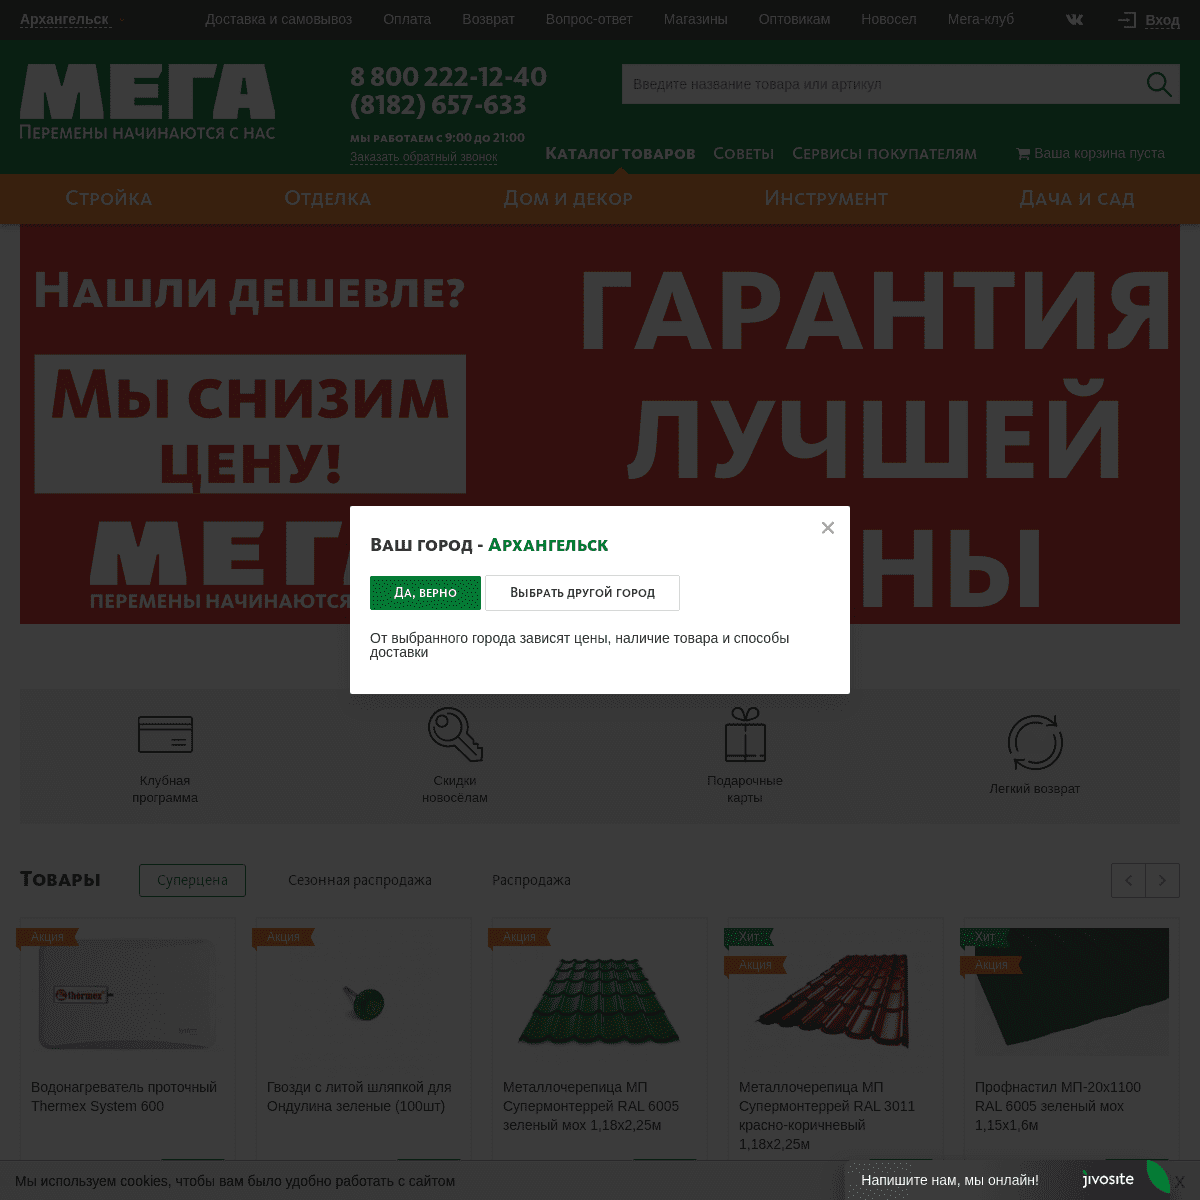 A complete backup of mega29.ru